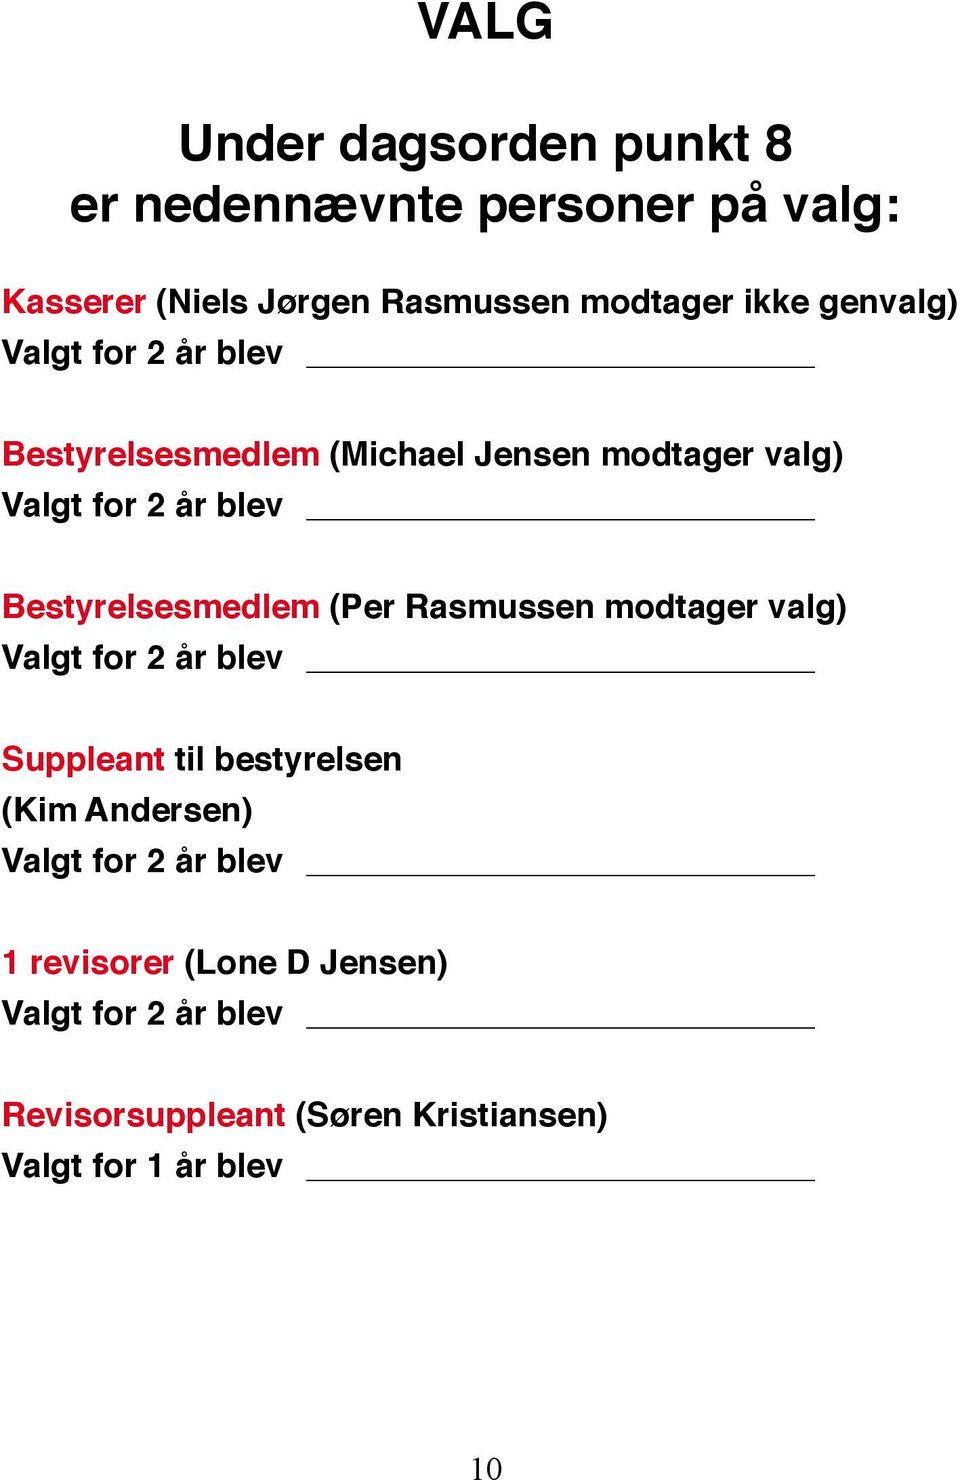 Bestyrelsesmedlem (Per Rasmussen modtager valg) Valgt for 2 år blev Suppleant til bestyrelsen (Kim Andersen)